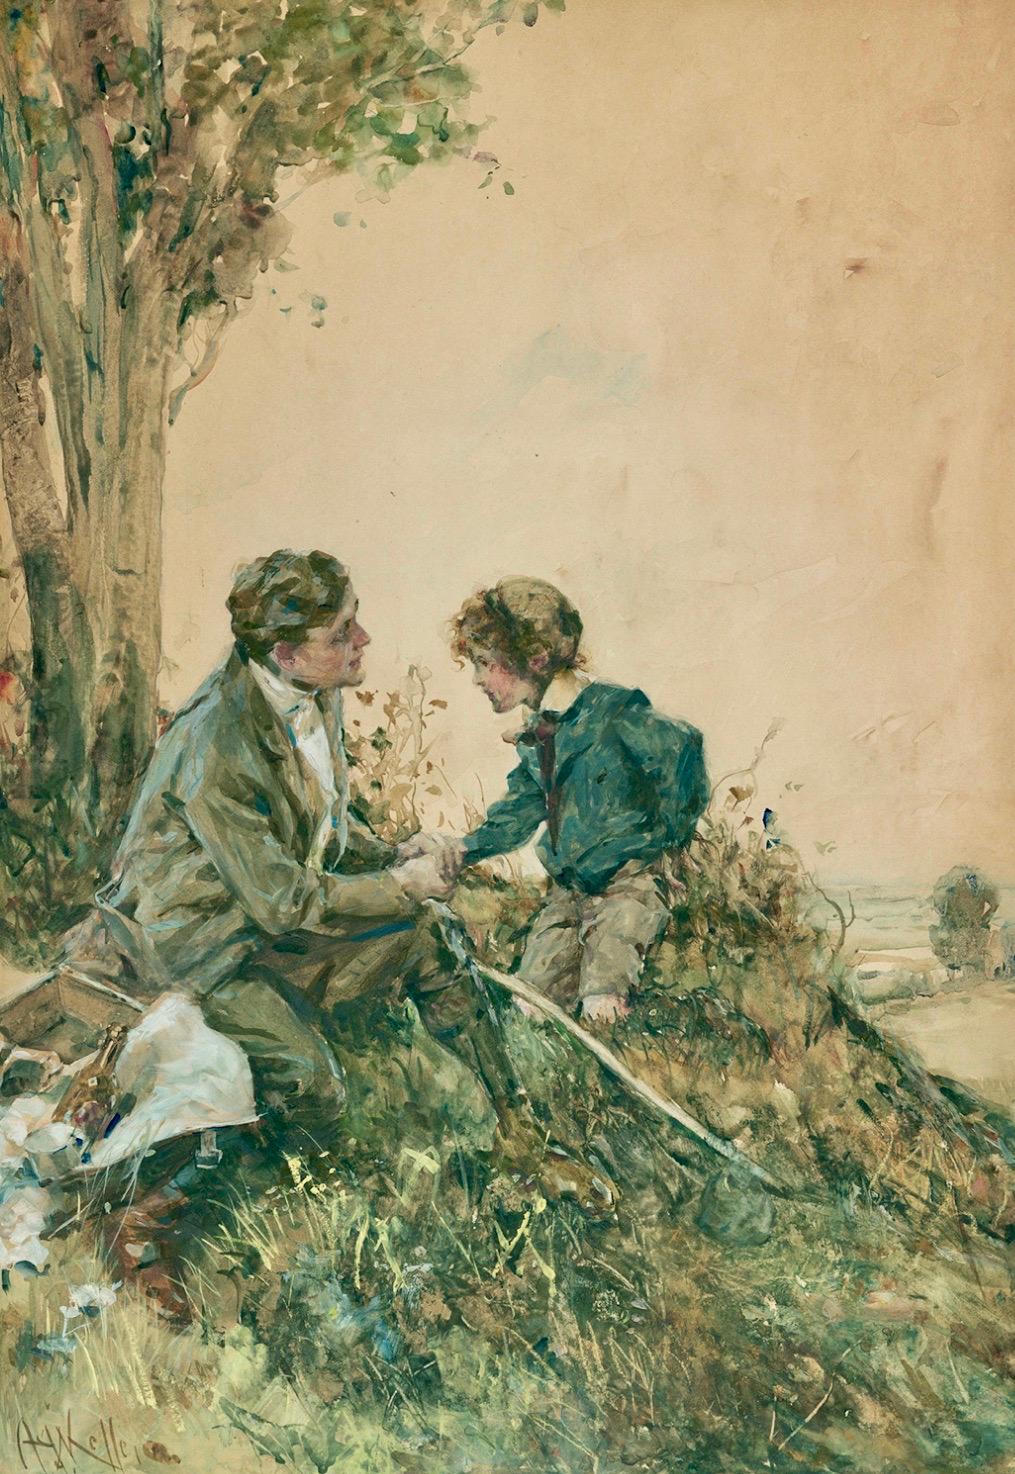 Junge und Junge beim Picnic – Painting von Arthur Keller